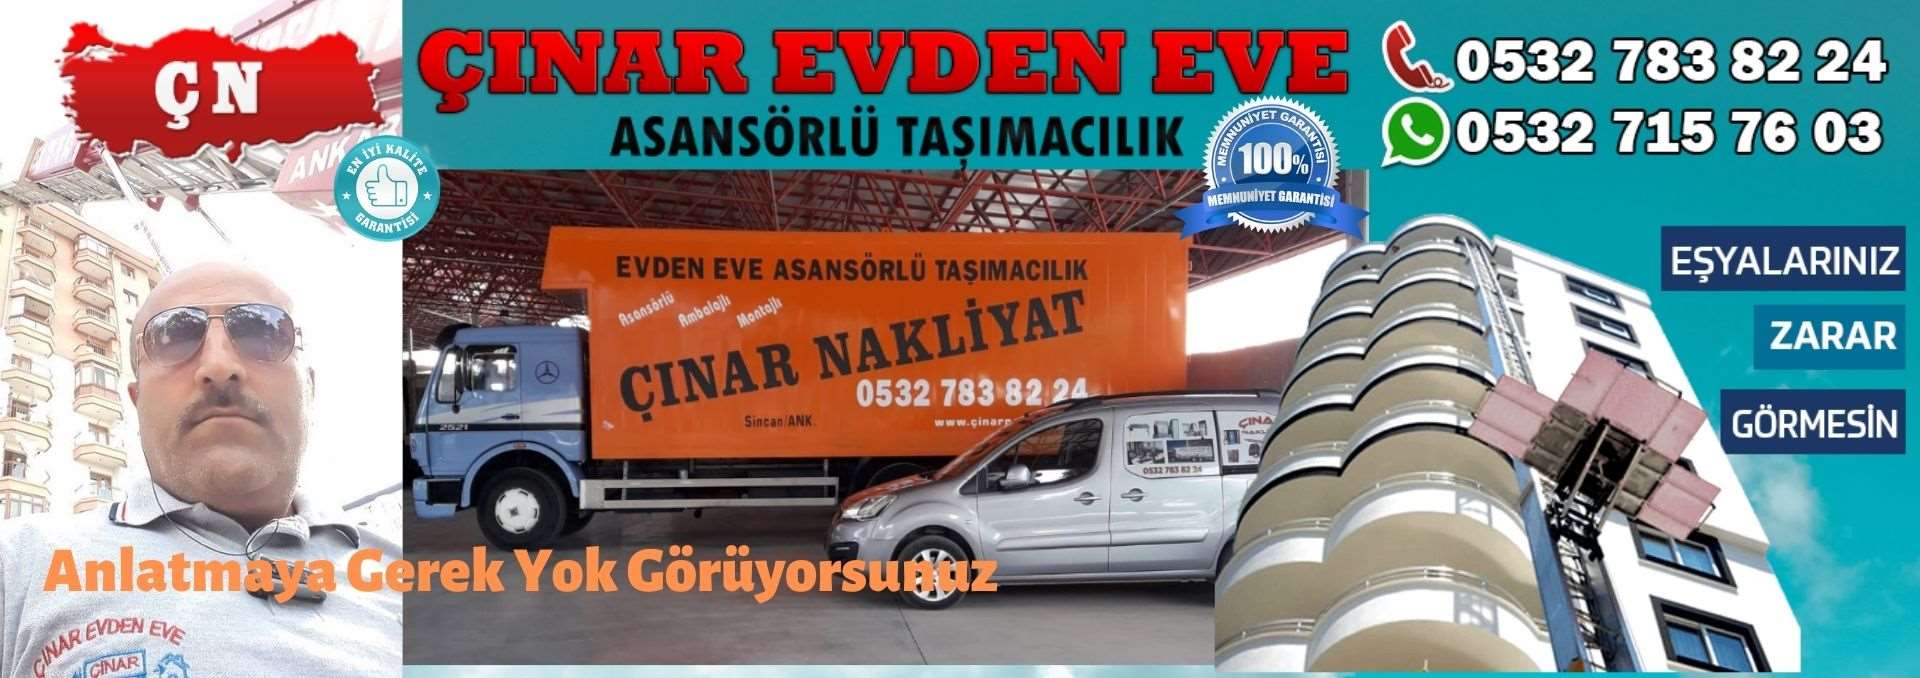 Ankara Sincan Evden Eve Asansörlü Ev Eşyası Taşıma 0532 715 76 03